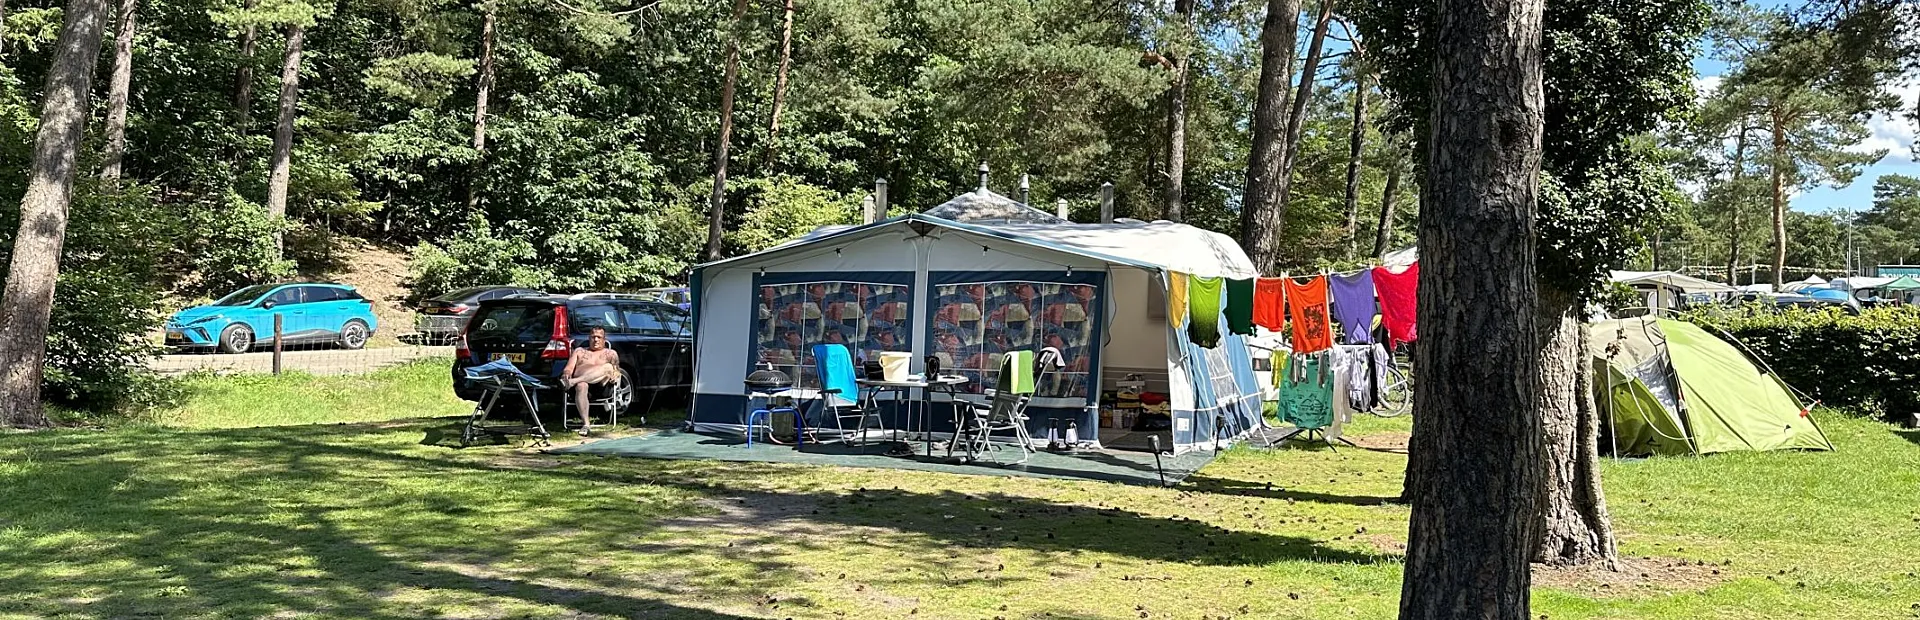 Camping Veluwe kampeerplaats Putter 3